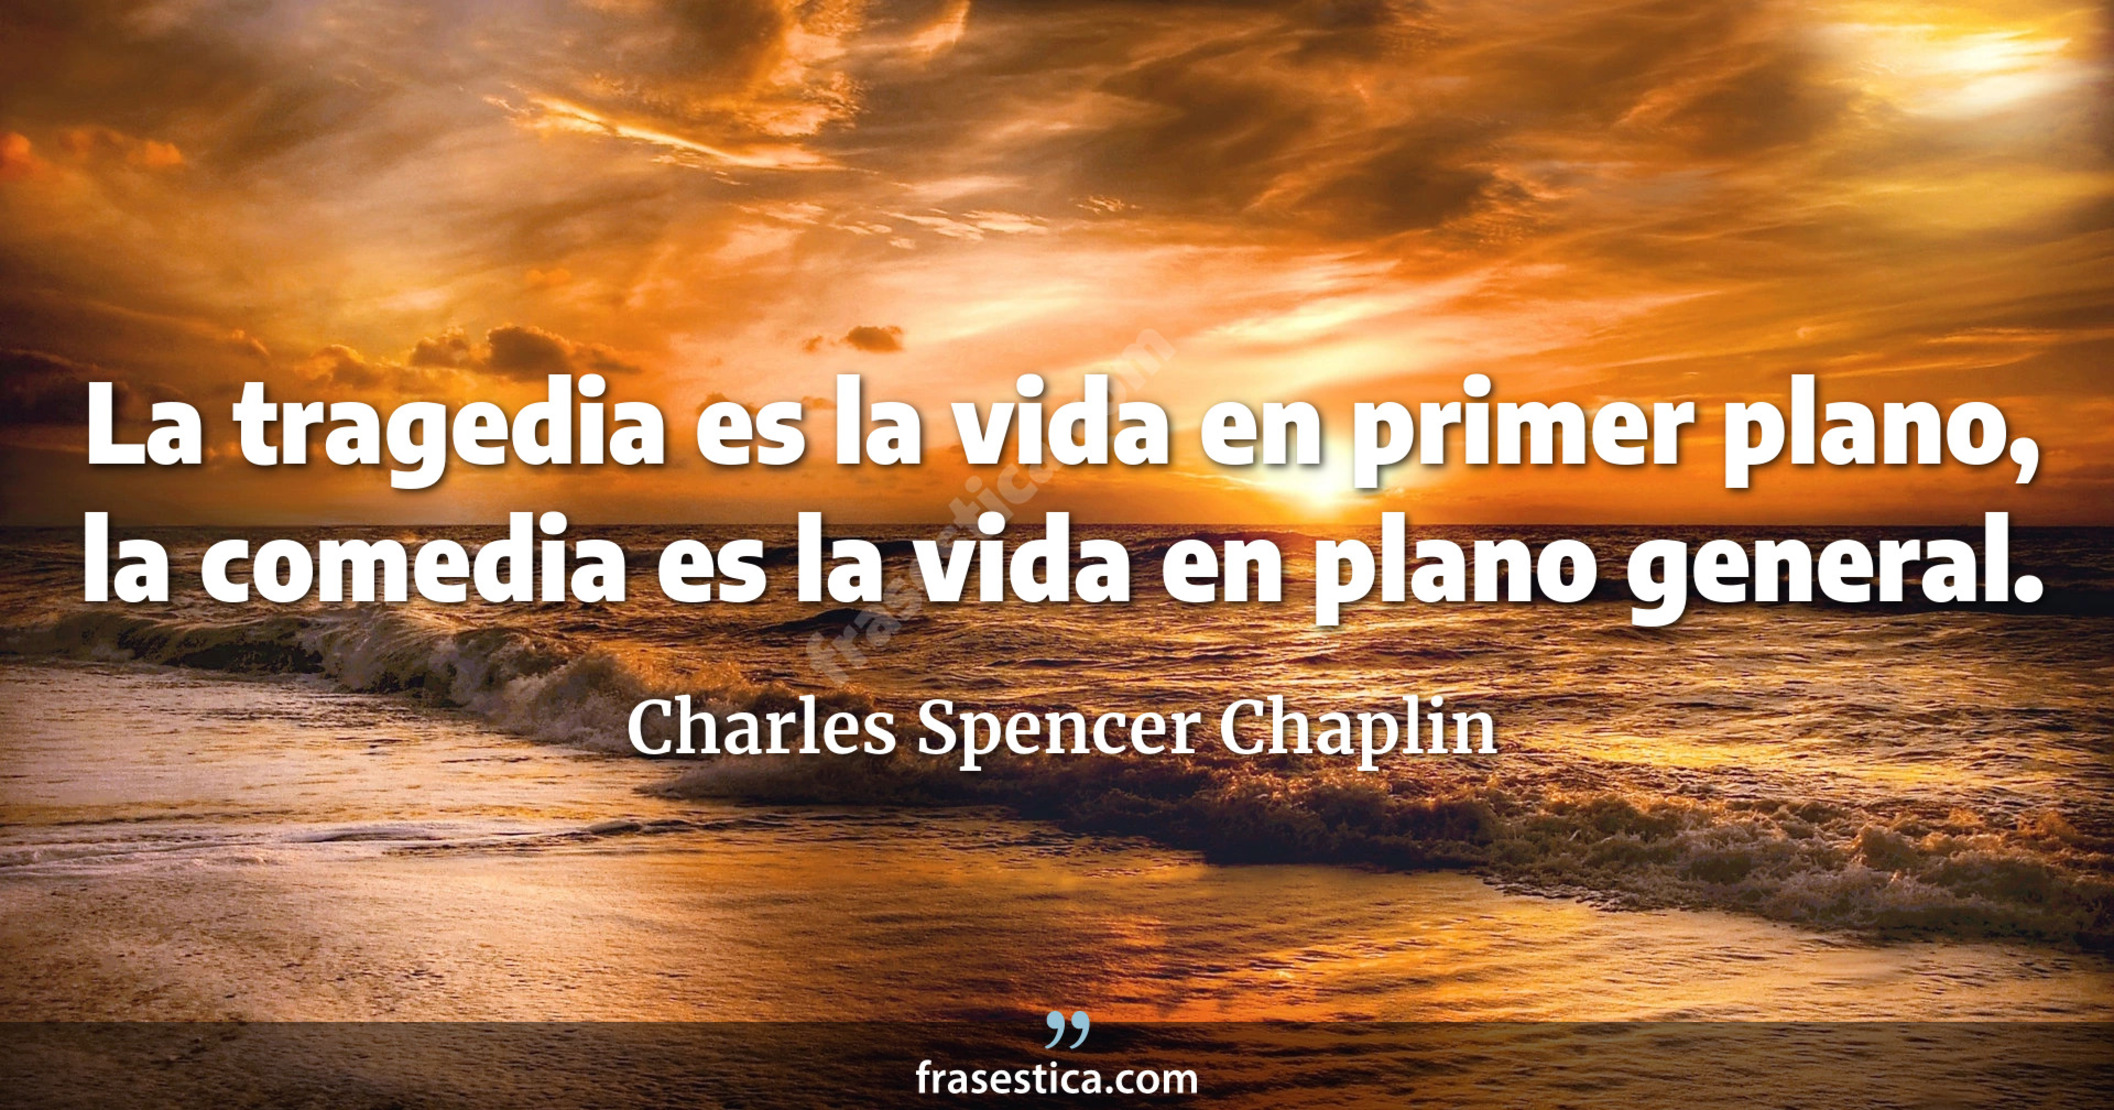 La tragedia es la vida en primer plano, la comedia es la vida en plano general. - Charles Spencer Chaplin